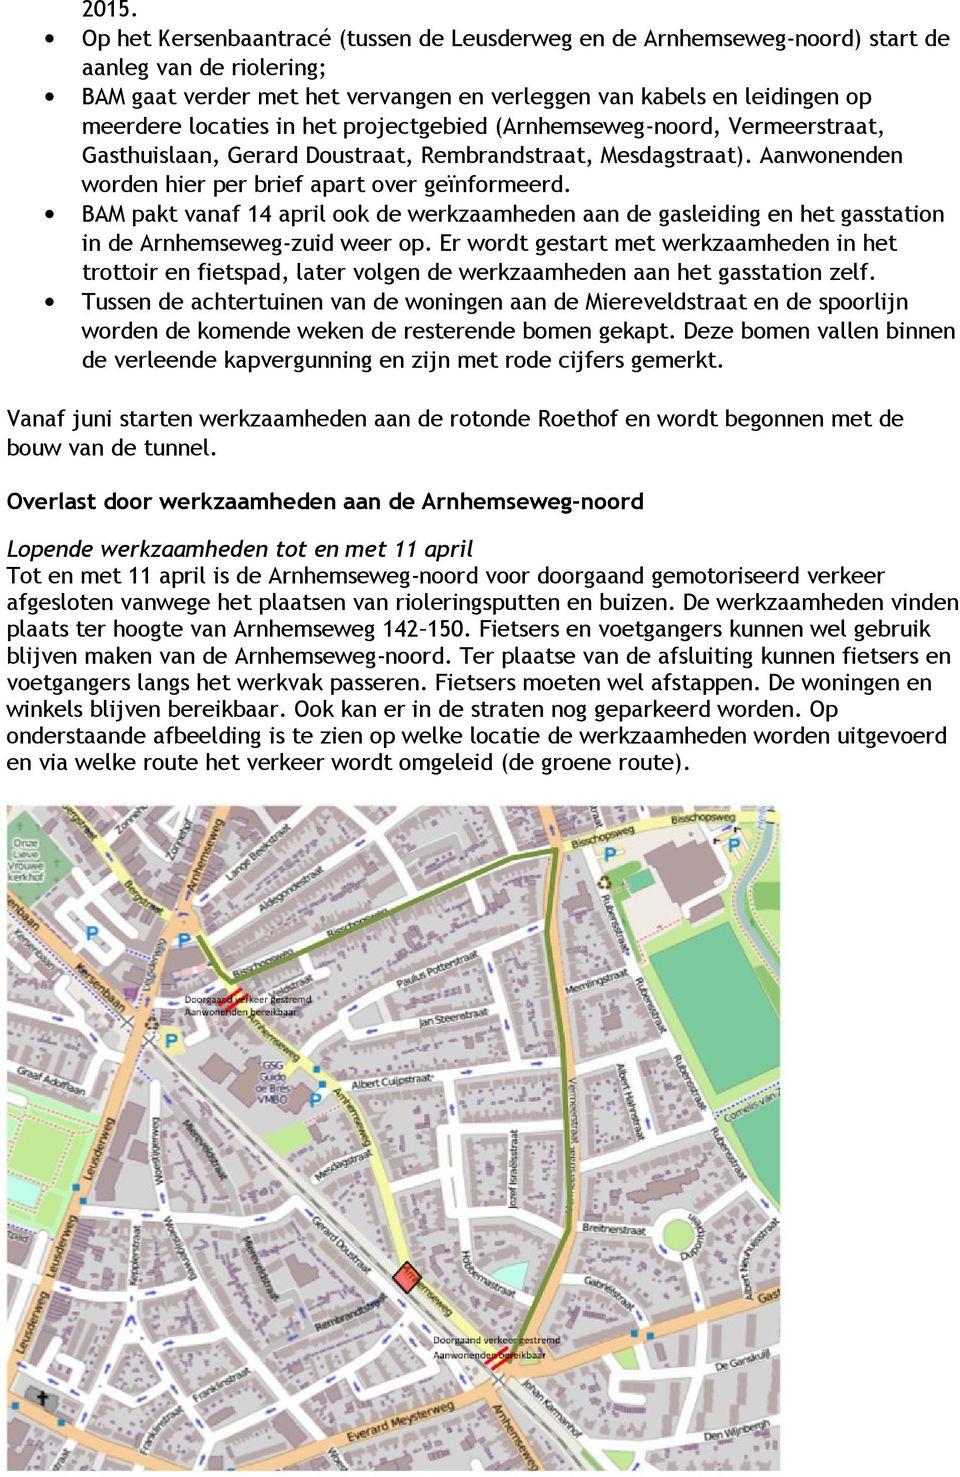 BAM pakt vanaf 14 april ook de werkzaamheden aan de gasleiding en het gasstation in de Arnhemseweg-zuid weer op.